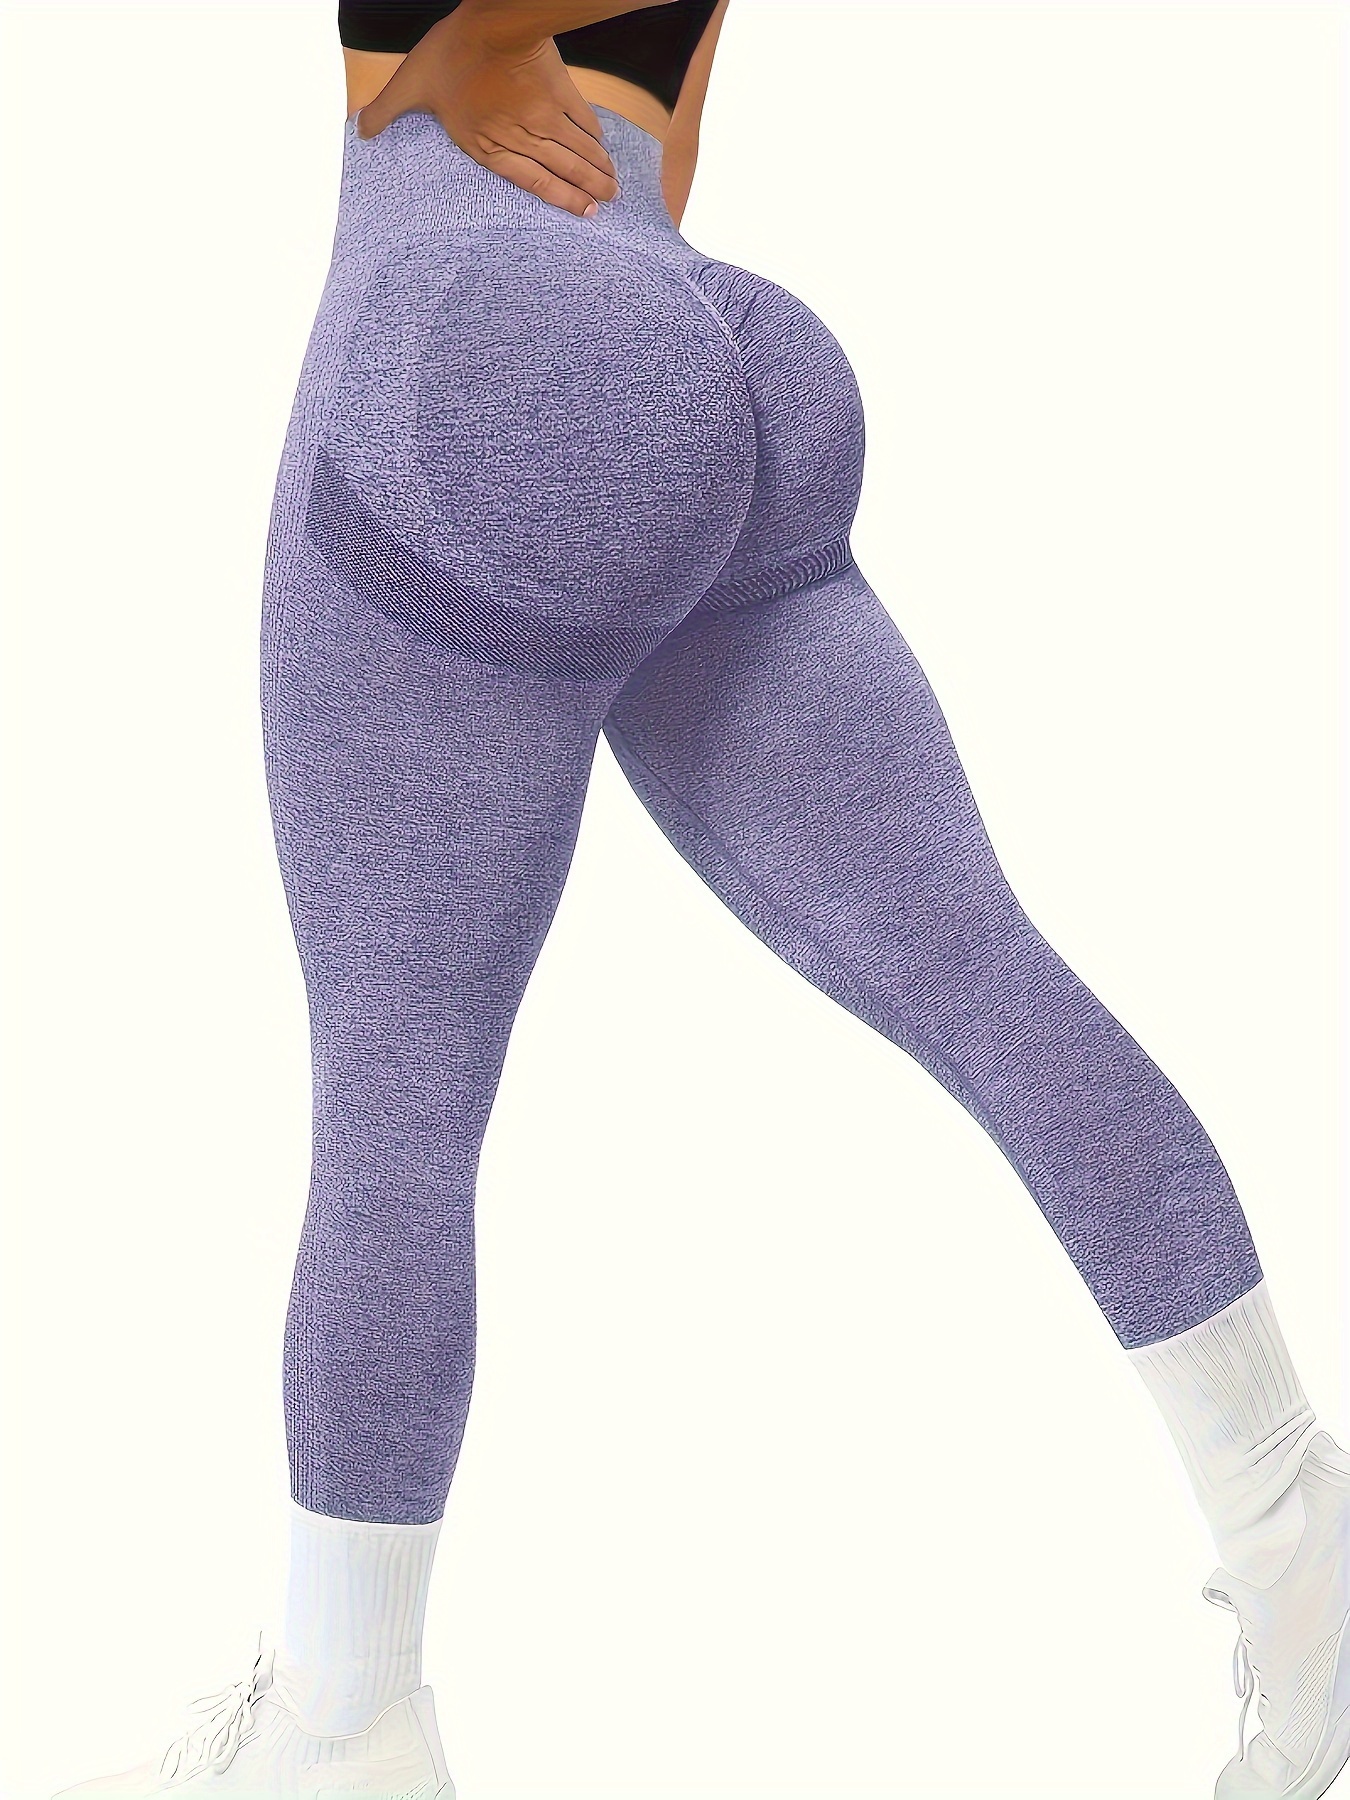 Seamless Leggings Push Up Sport Women High Waist Scrunch Butt Fitness  Running Yoga Pants Workout Trousers Gym Tight Pants Women